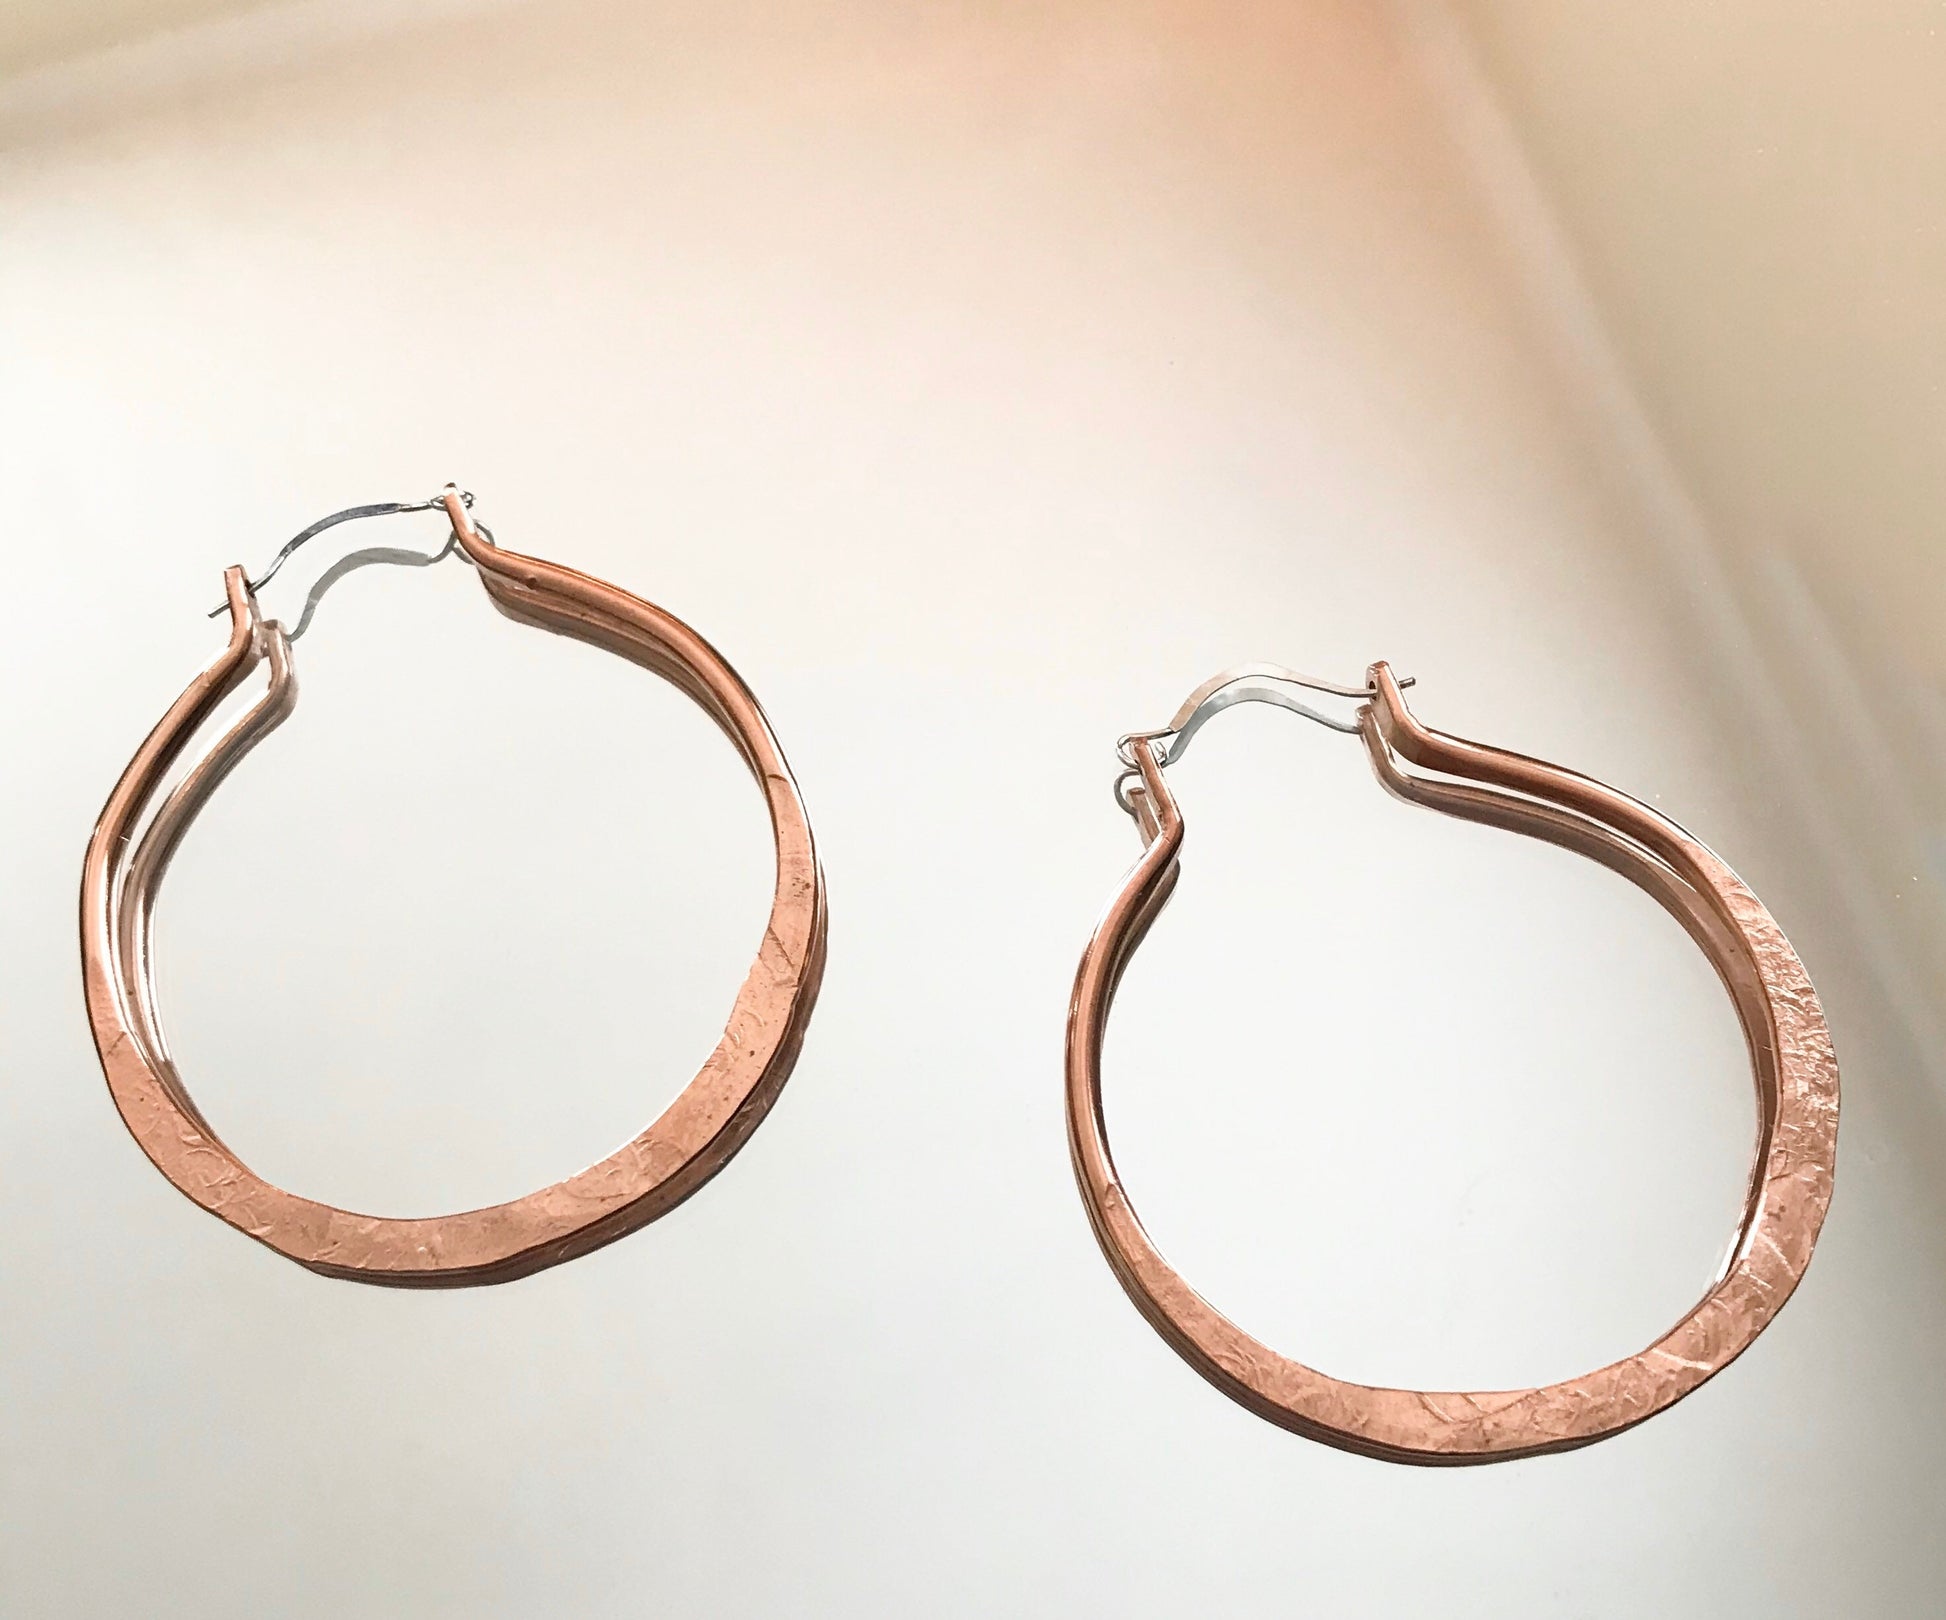 Copper Hoop Earrings,Hammered Copper, Boho Earrings, Bohemian Earrings, Copper Jewelry